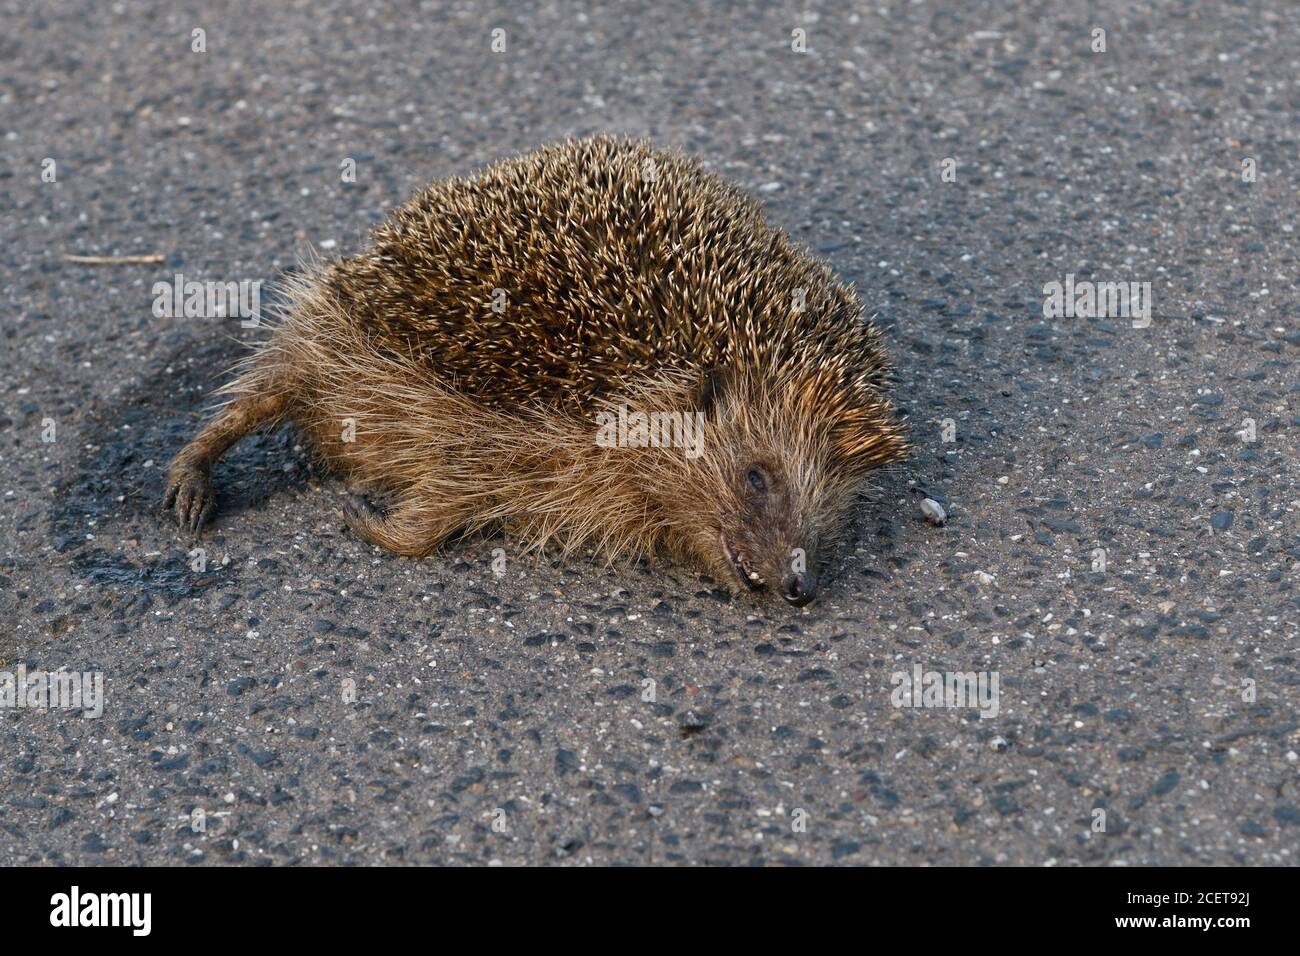 Dead Hedgehog ( Erinaceus europaeus ), schiacciato sulla strada, uccisione stradale, in pericolo, percorso dal traffico stradale, colpito da una macchina, fauna selvatica, Europa. Foto Stock